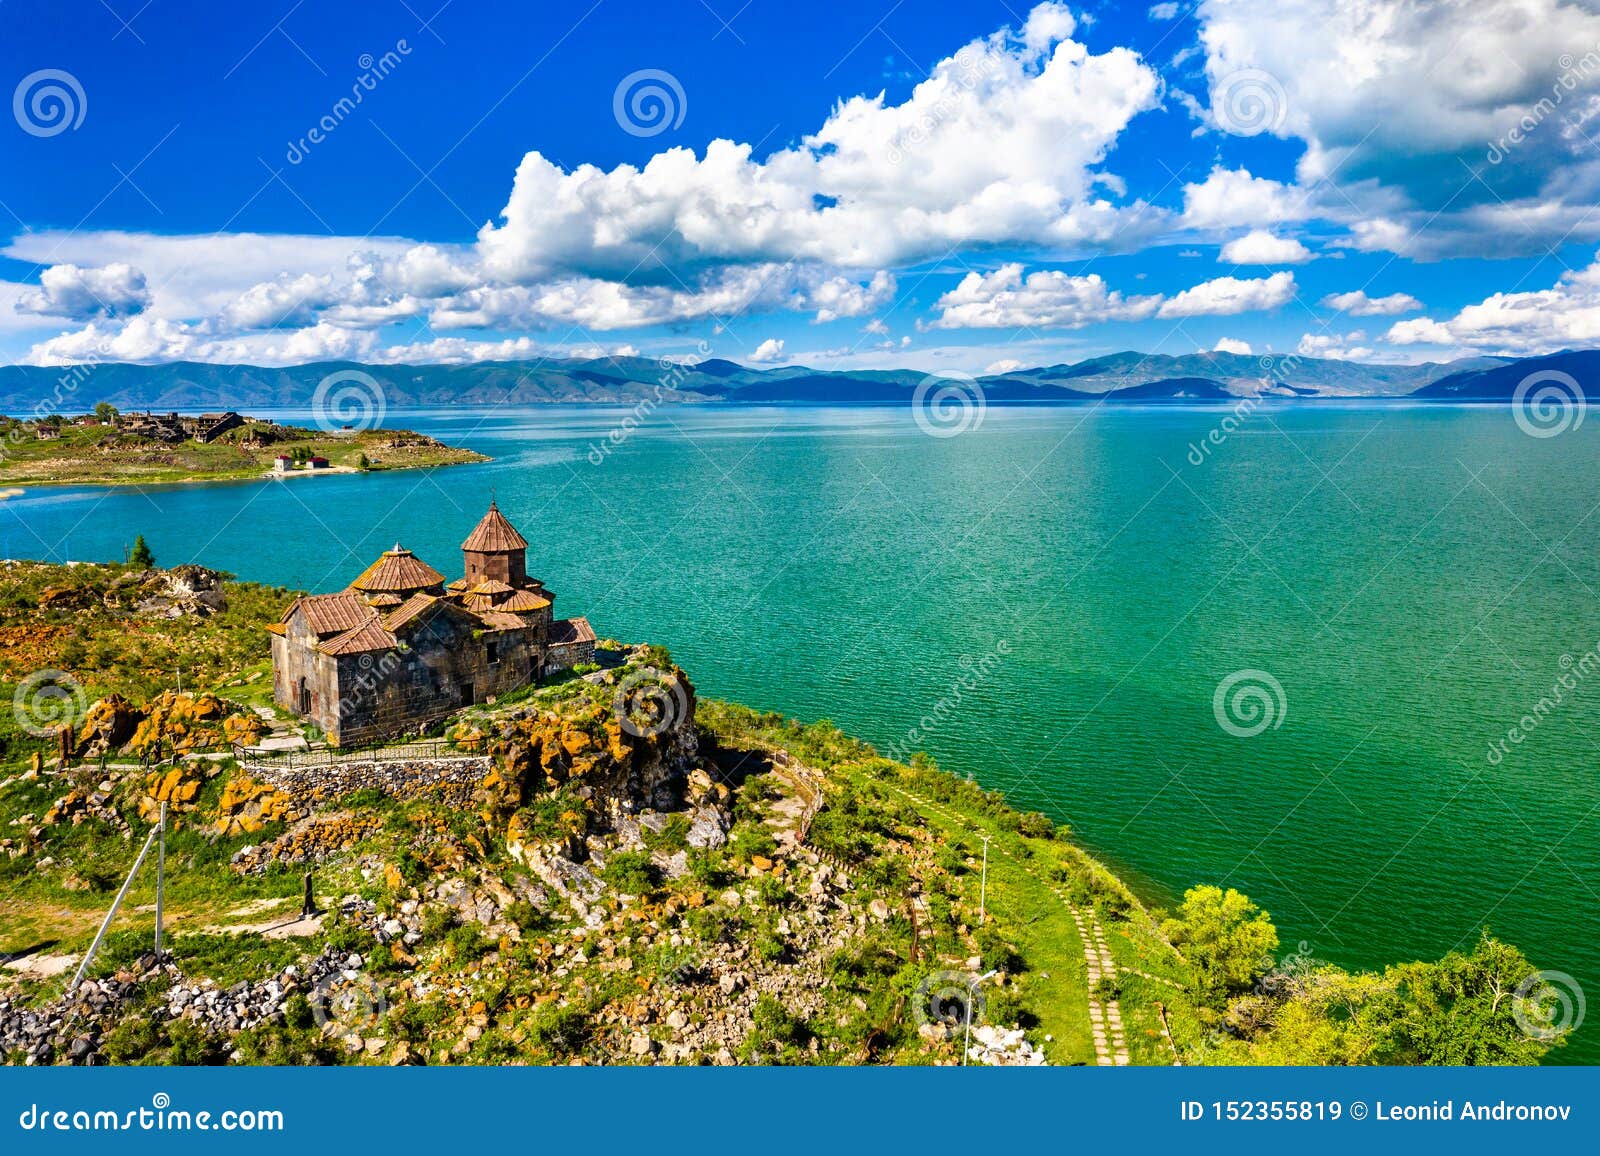 hayravank monastery on the shores of lake sevan in armenia